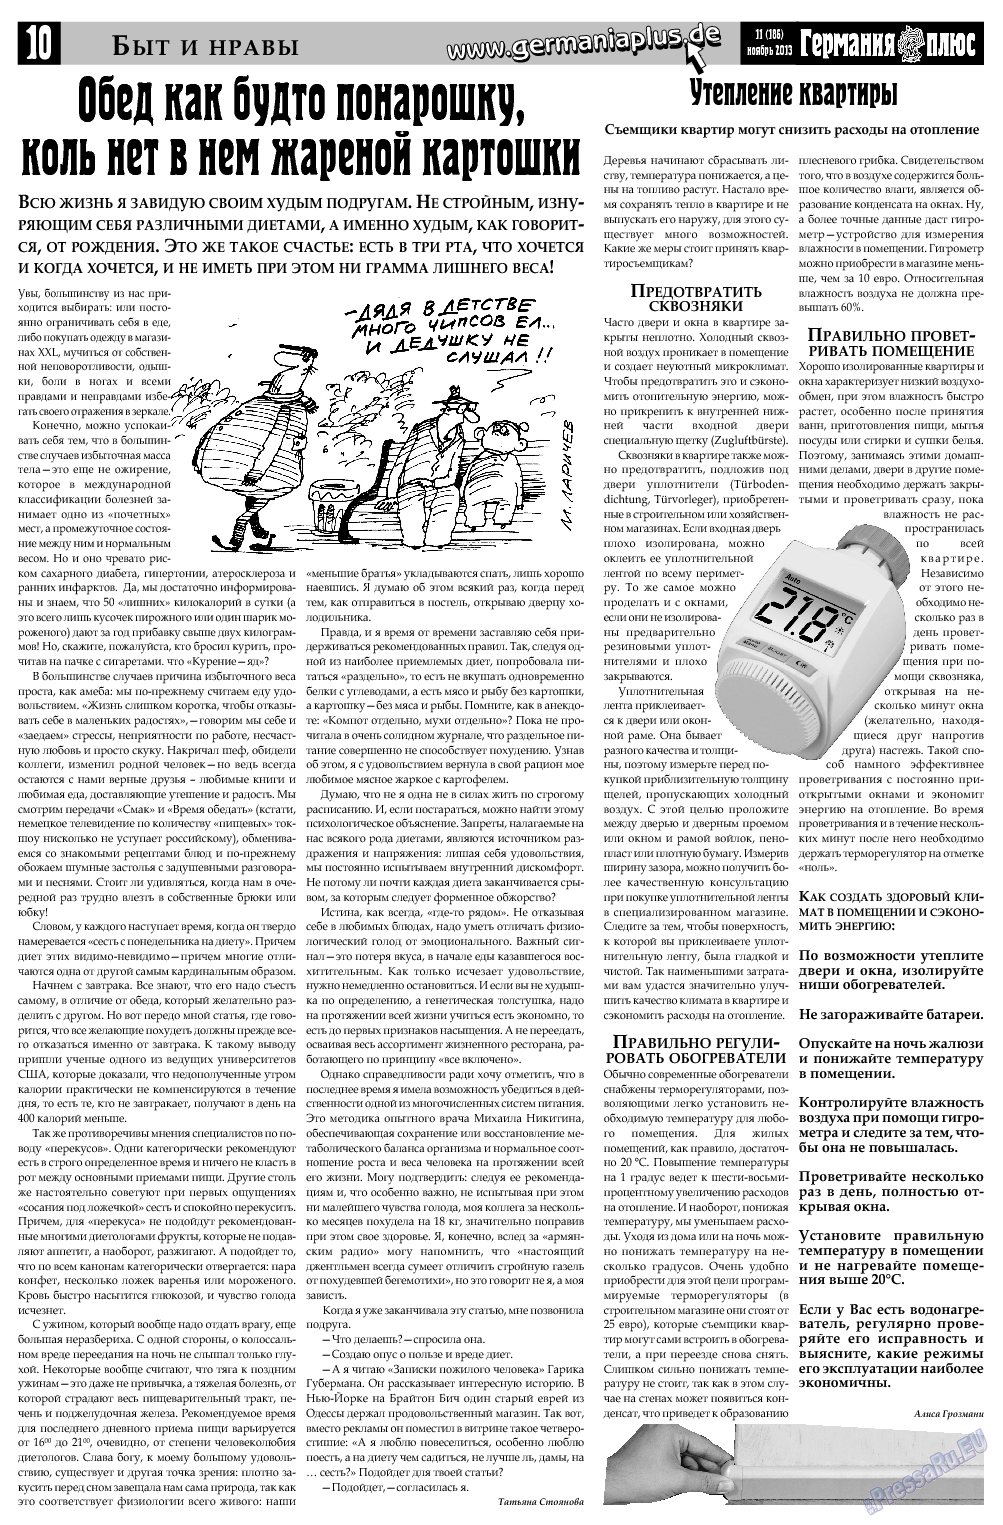 Германия плюс, газета. 2013 №11 стр.10